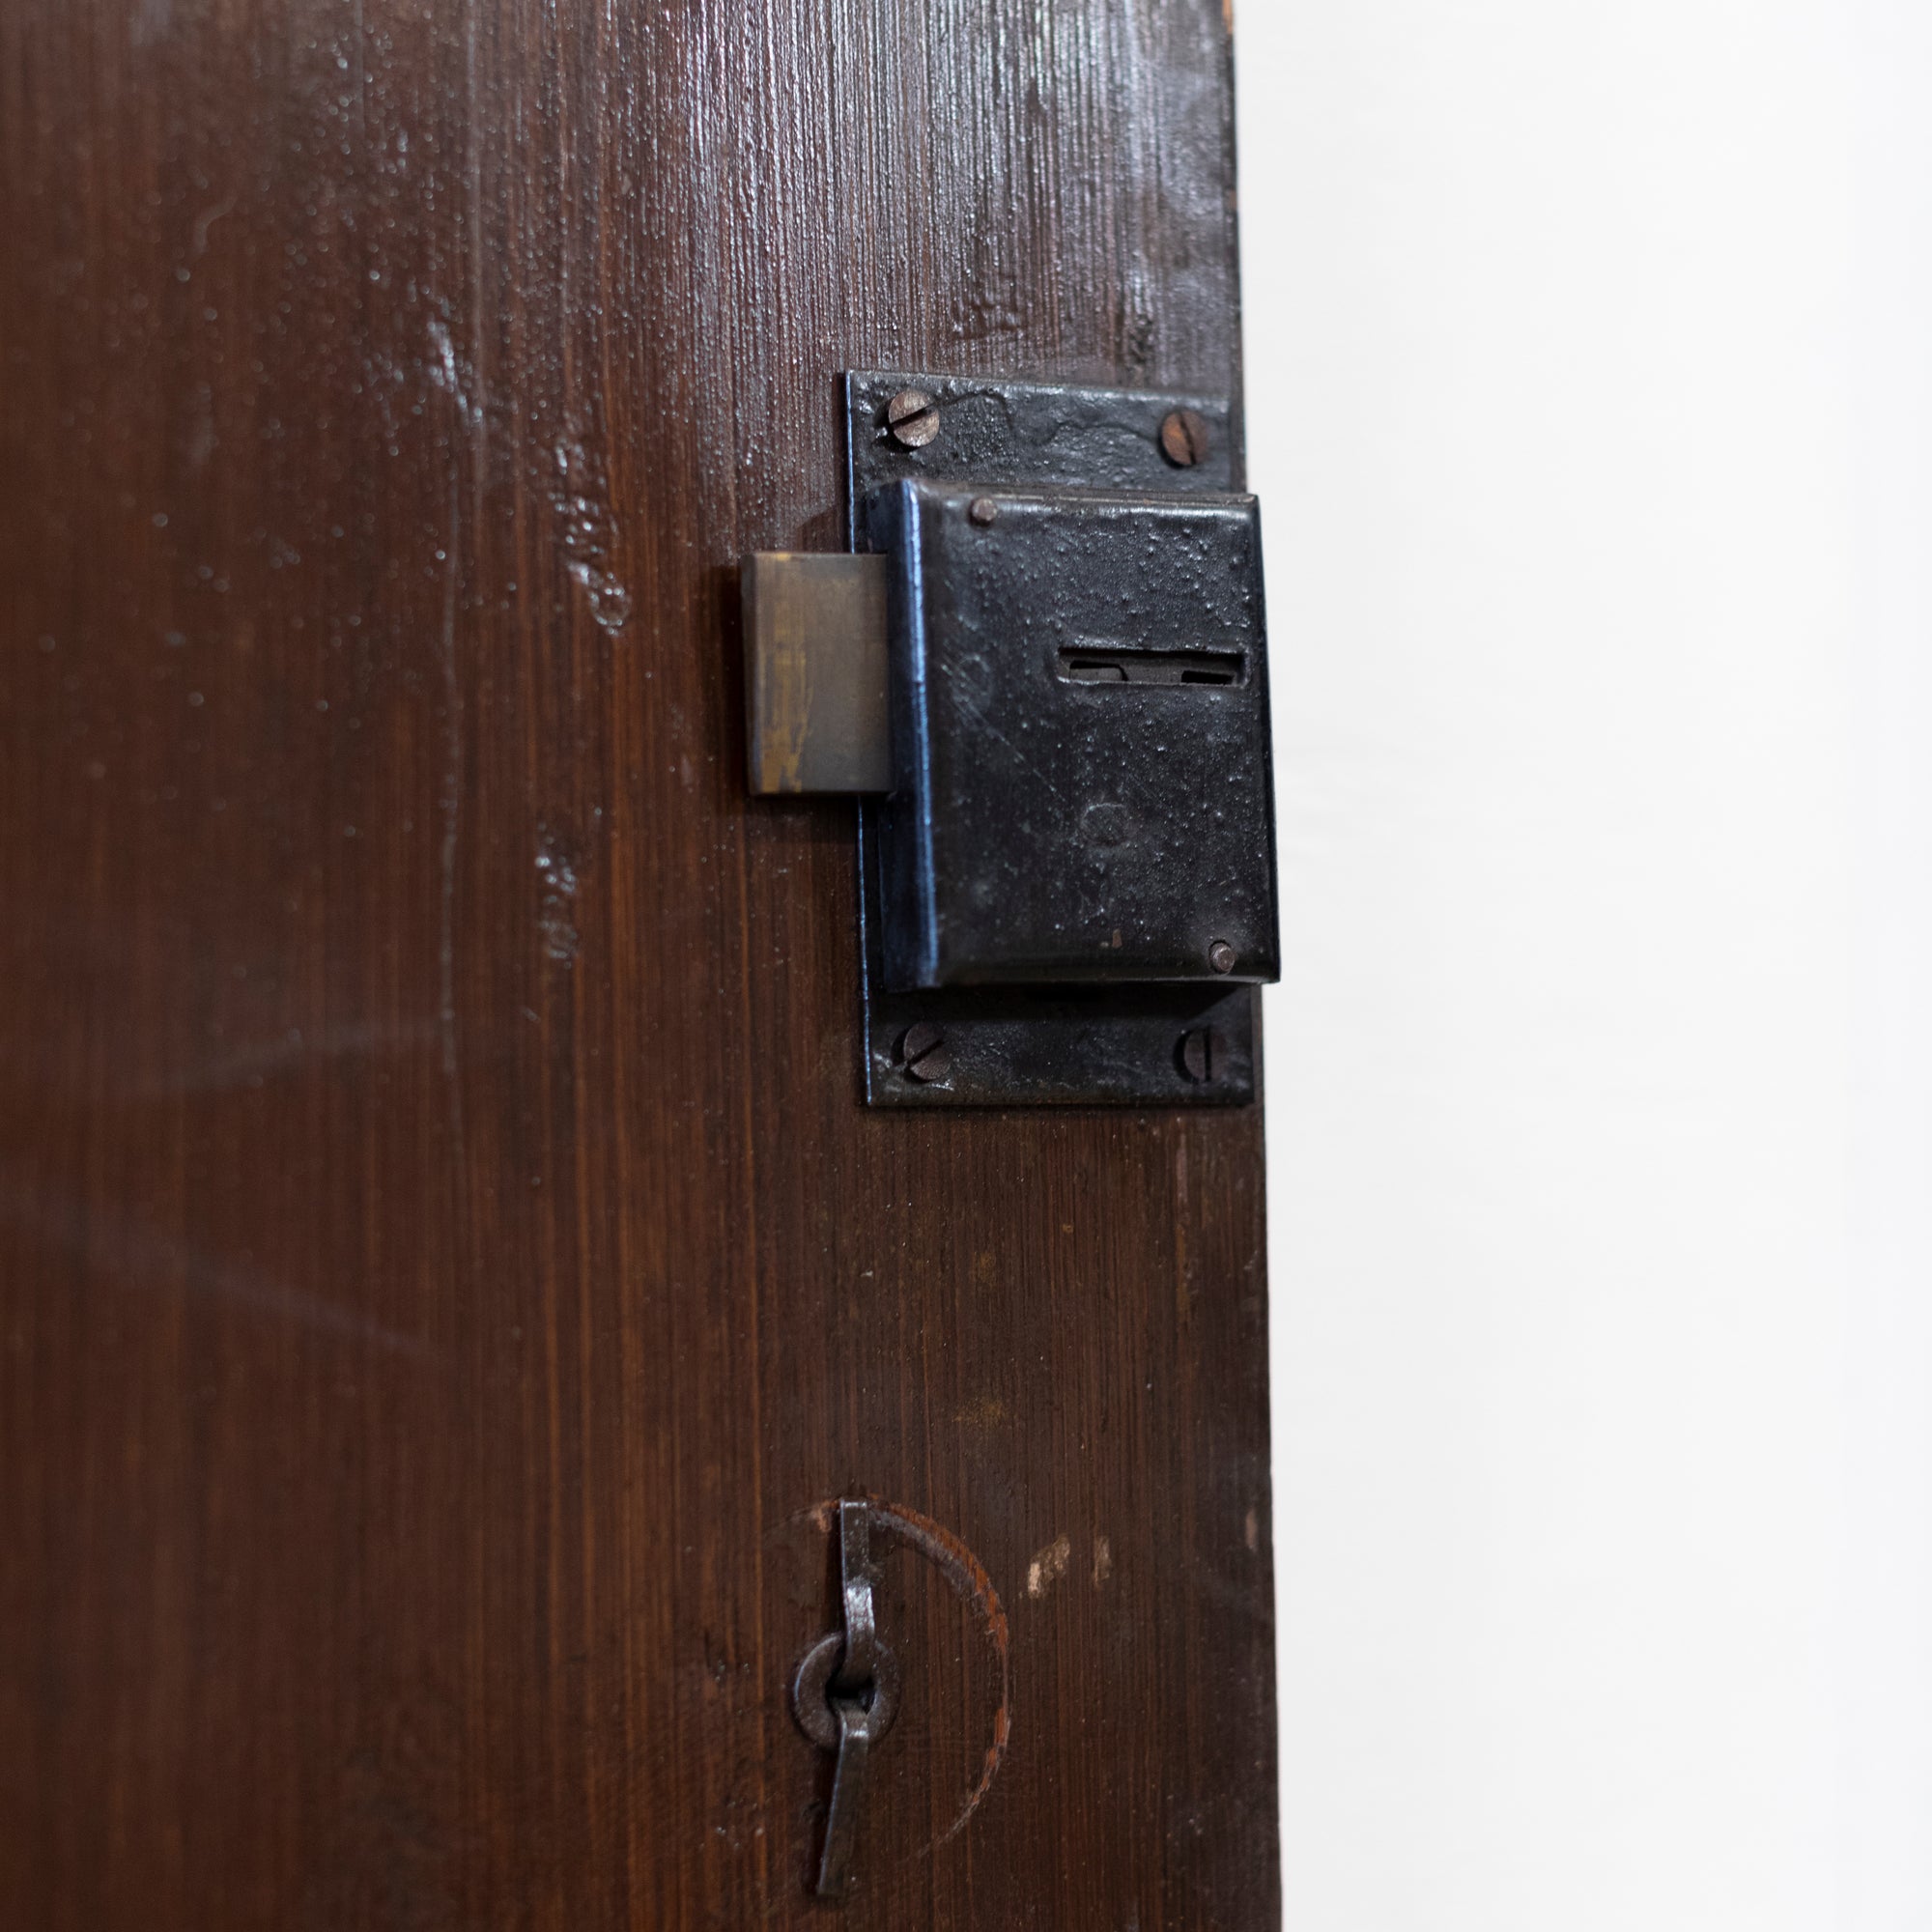 Antique Oak Latch Door - 187.5cm x 78.5cm | The Architectural Forum